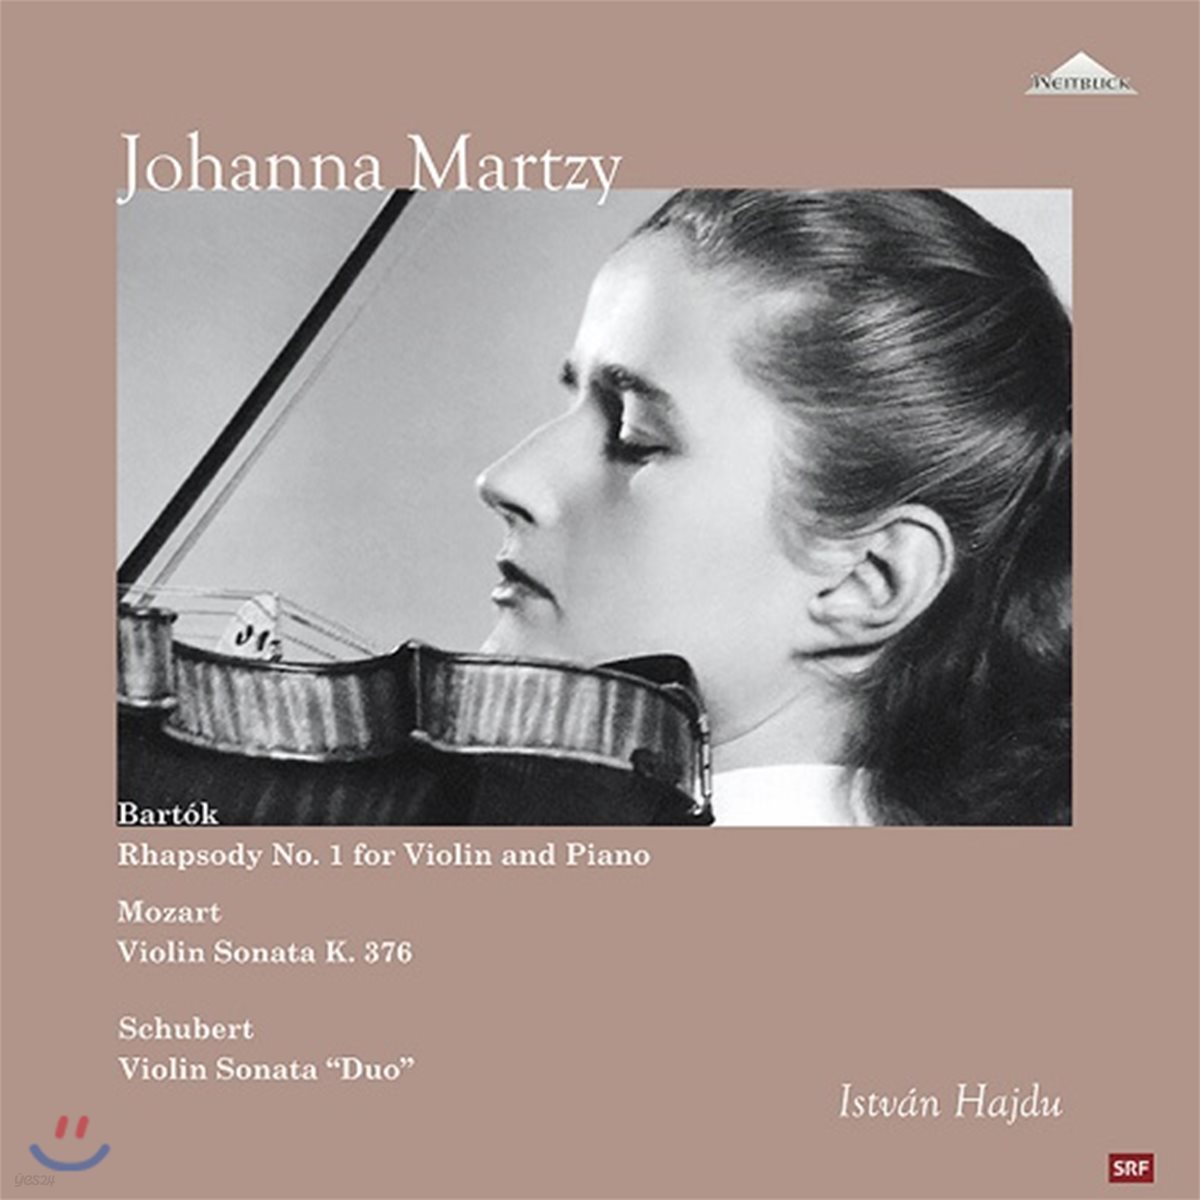 Johanna Martzy 바르톡: 랩소디 1번 / 모차르트: 바이올린 소나타 32번 / 슈베르트: 바이올린 소나타 '듀오' - 요한나 마르치 [2LP]